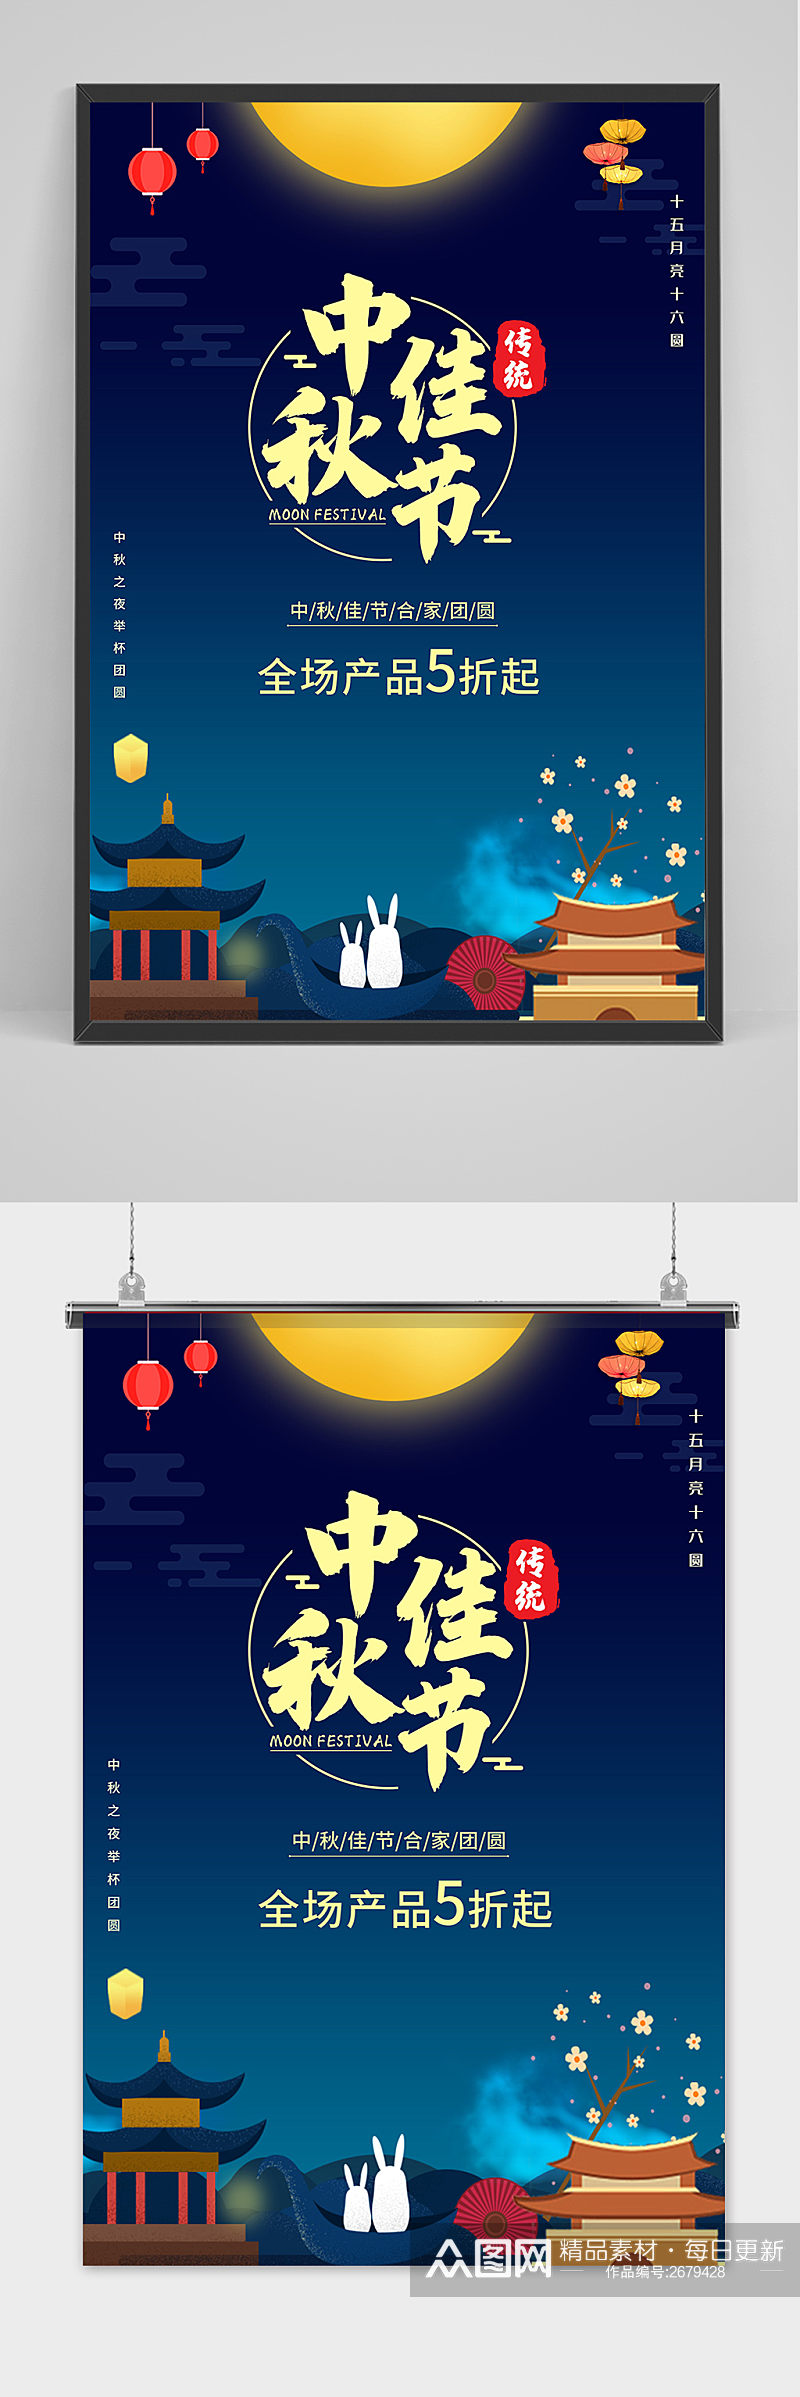 手绘中国风唯美中秋节海报素材